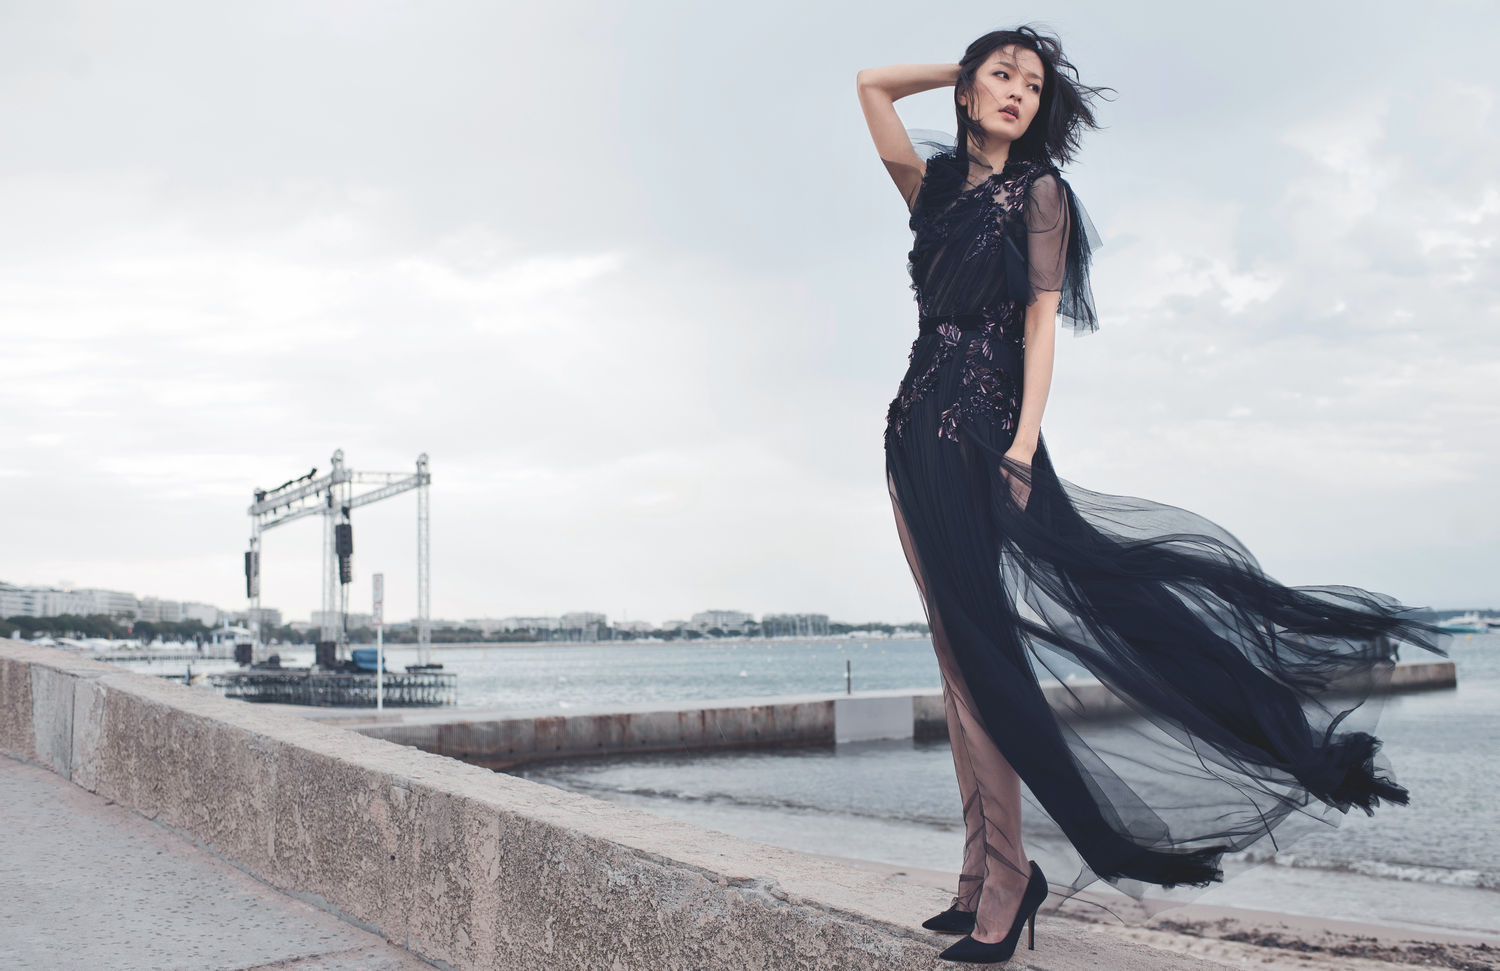 Du Juan Model Actress Chinese Asian Brunette Wind Black Dress Women Outdoors High Heels Black Clothi 1500x971